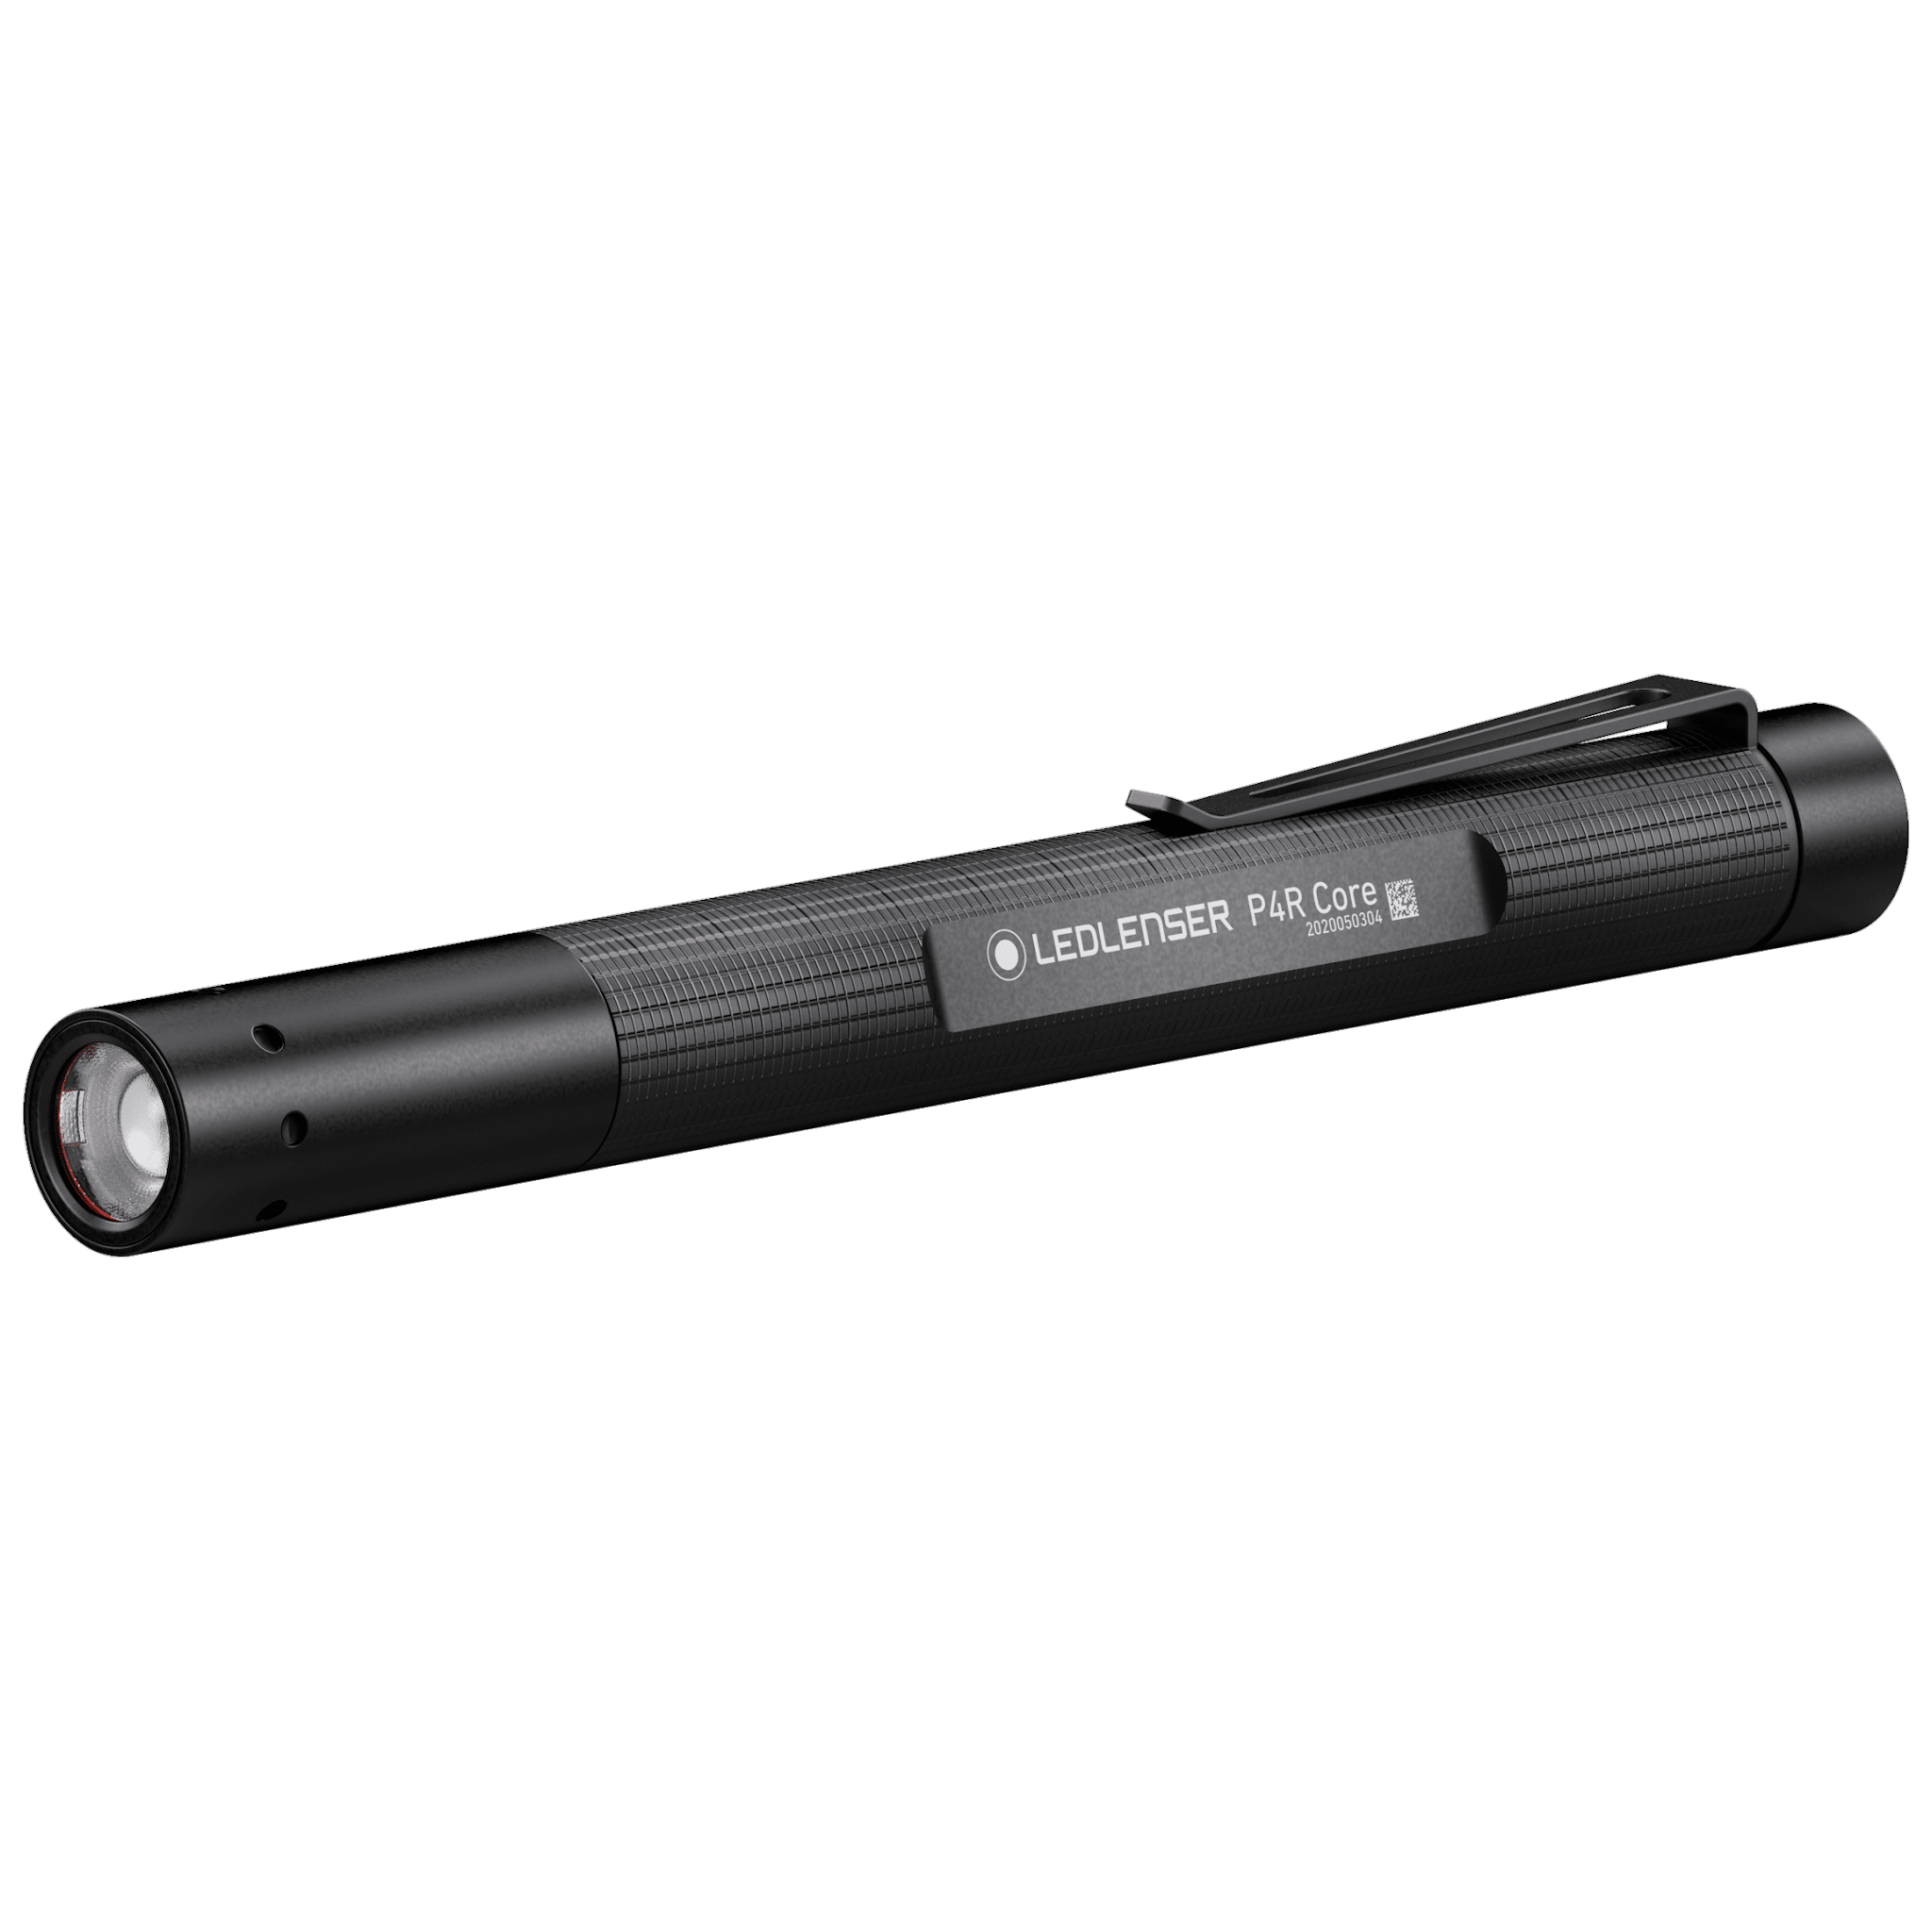 Pen Flashlight Rechargeable LedLenser P4R Core